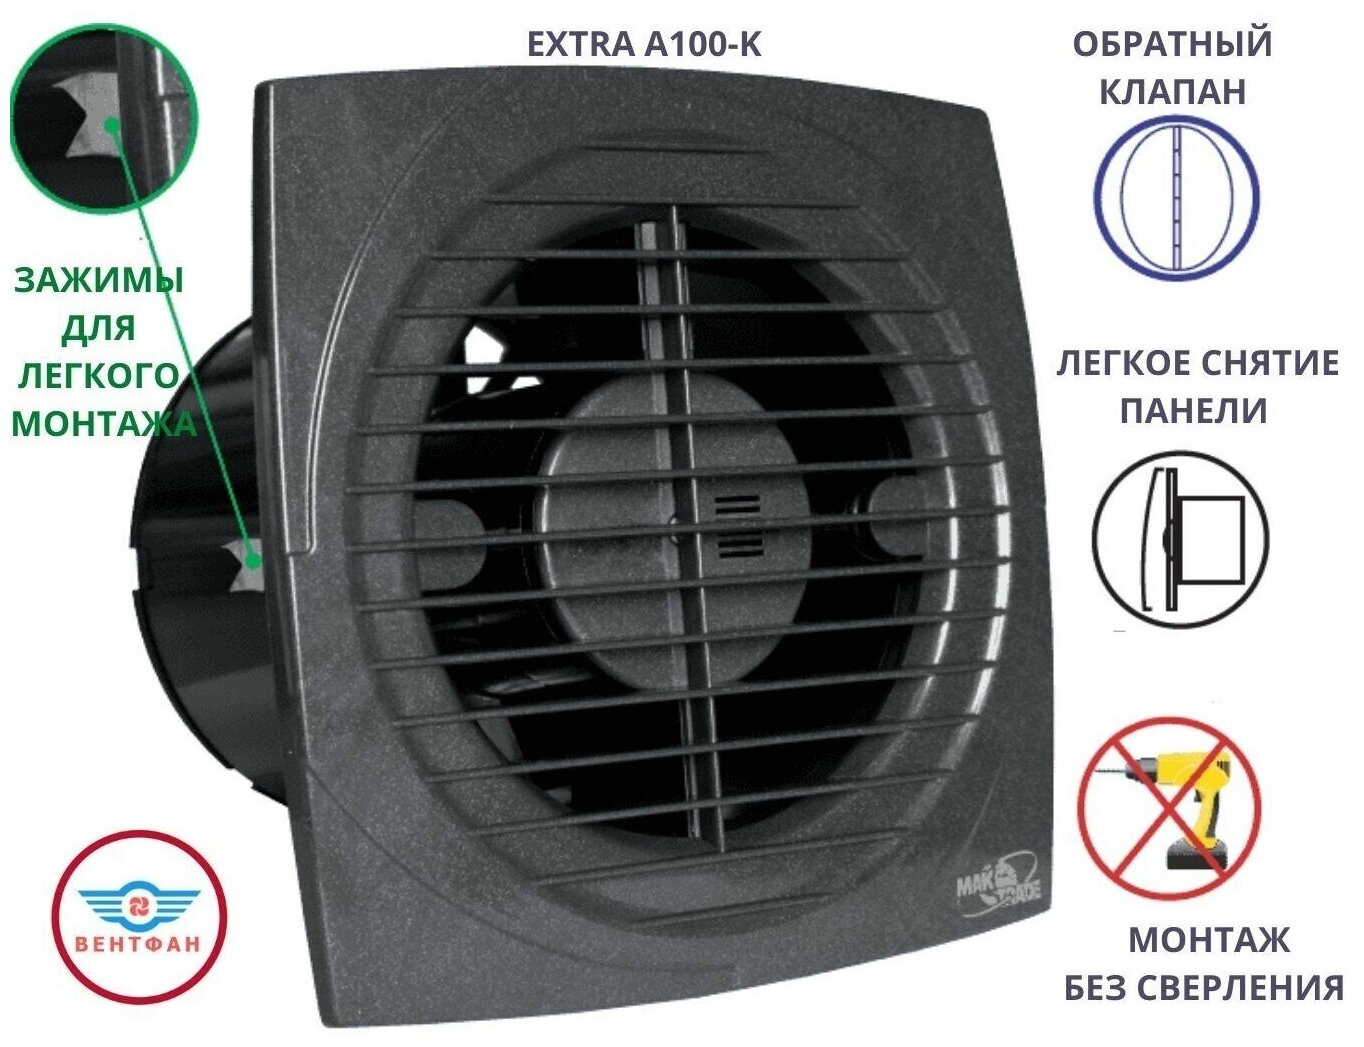 Вытяжной вентилятор D100мм с обратным клапаном и креплением без сверления EXTRA A100-K, цвет антрацит, Сербия